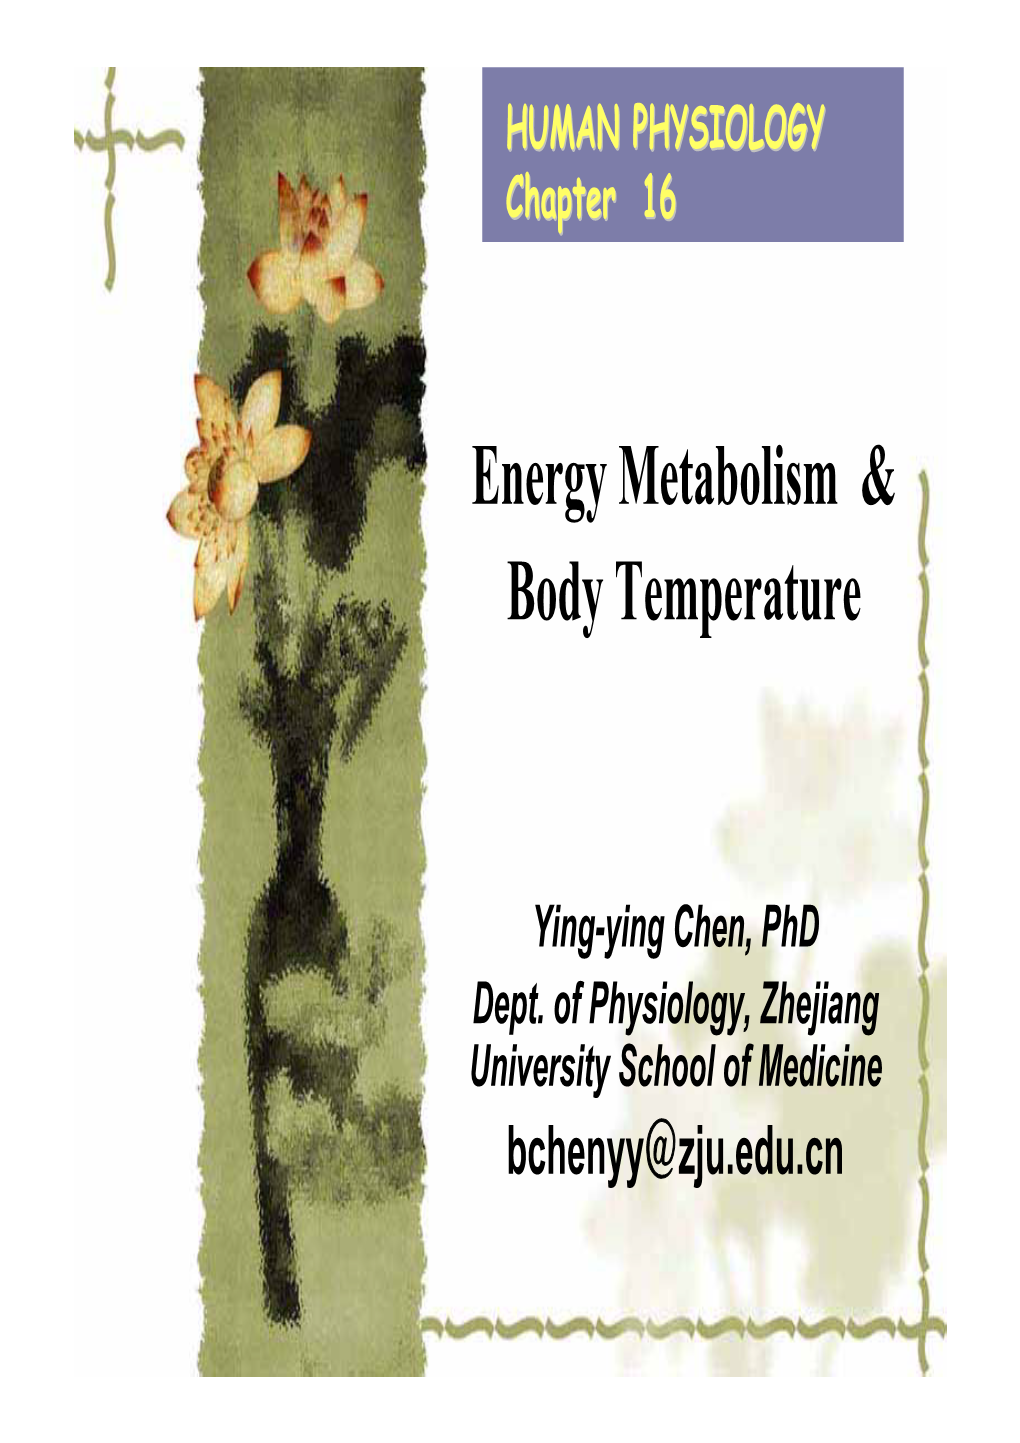 Energy Metabolism & Body Temperature